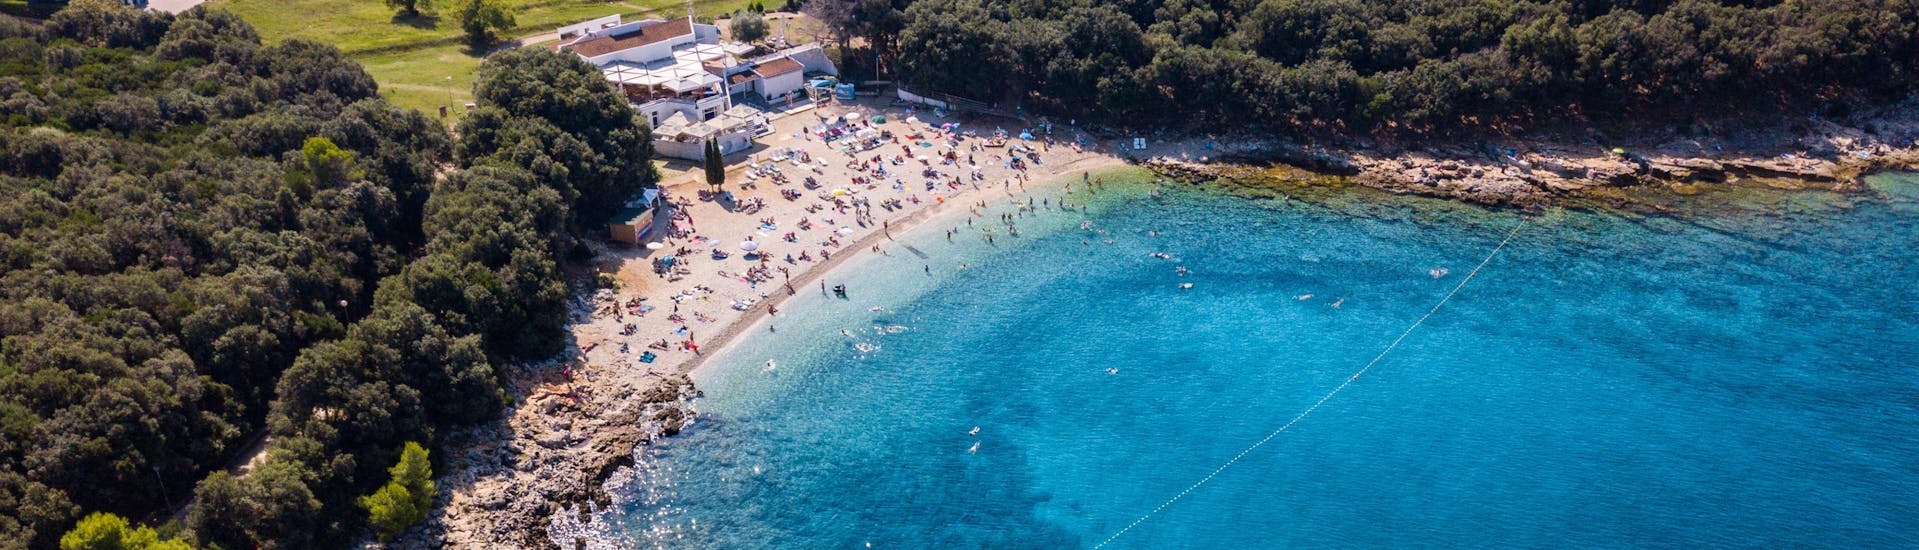 Menschen, die sich am Strand von Verudela in Kroatien amüsieren.